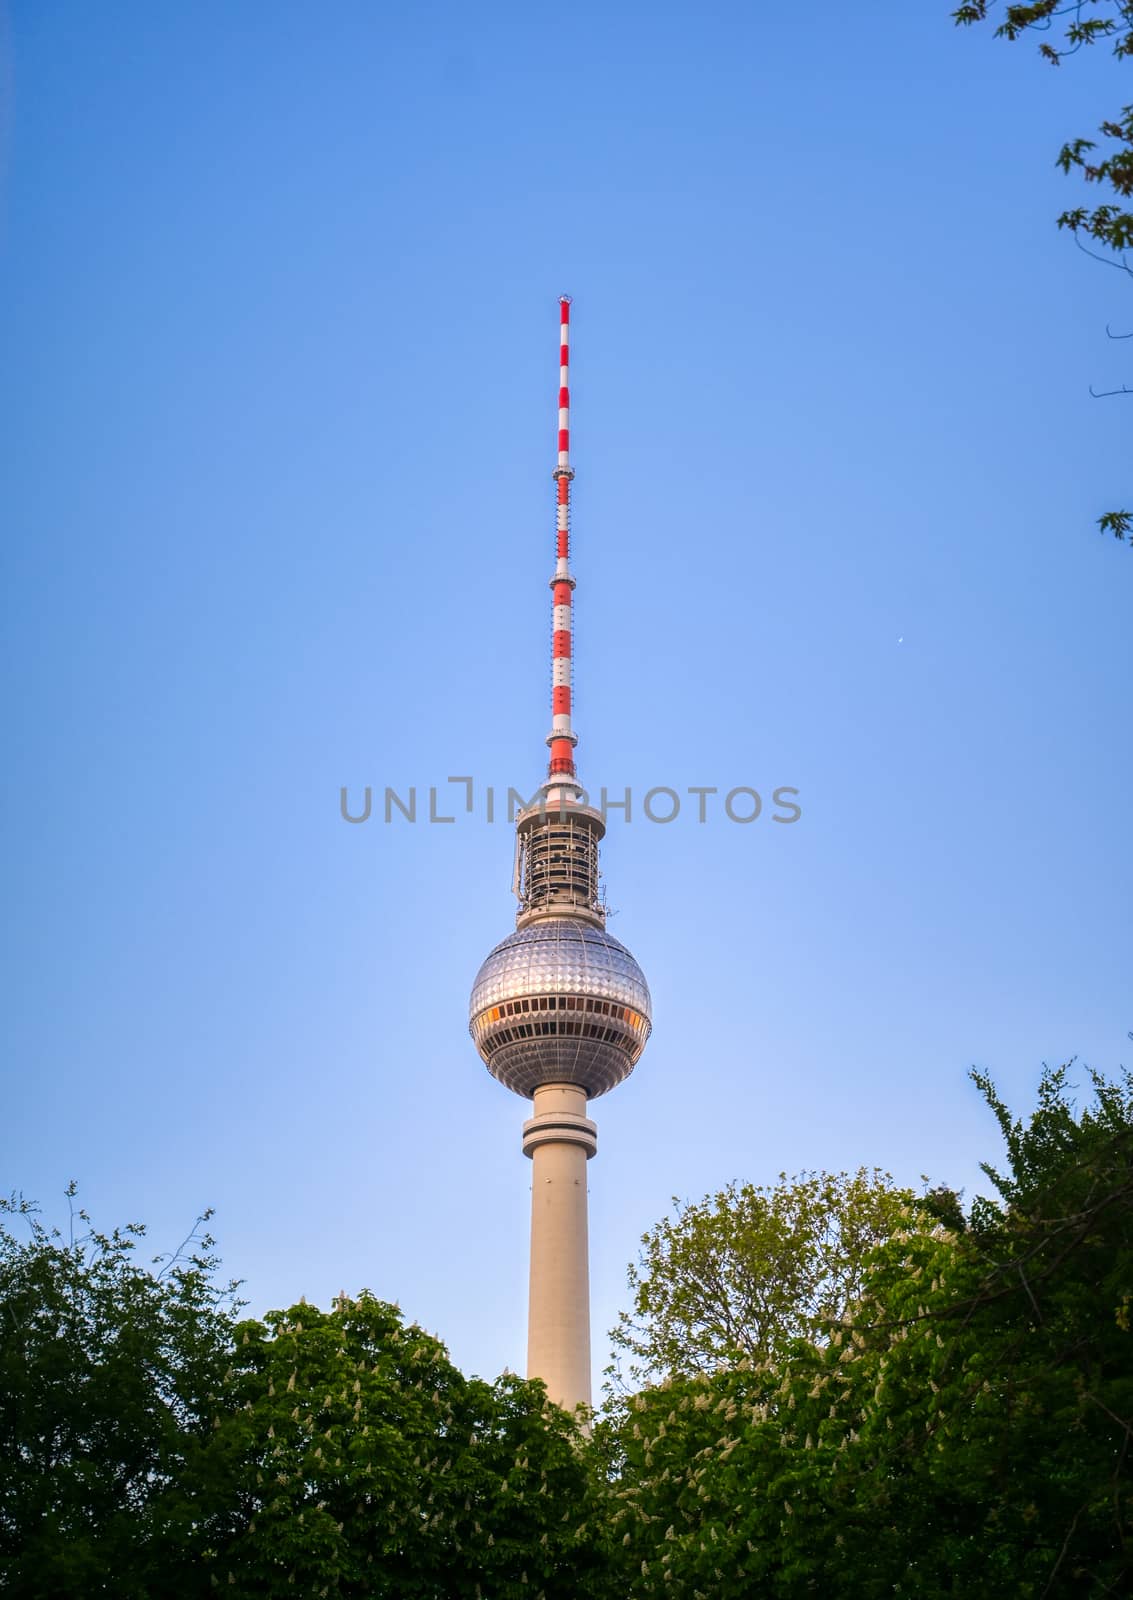 TV Tower in Berlin, Germany by jbyard22